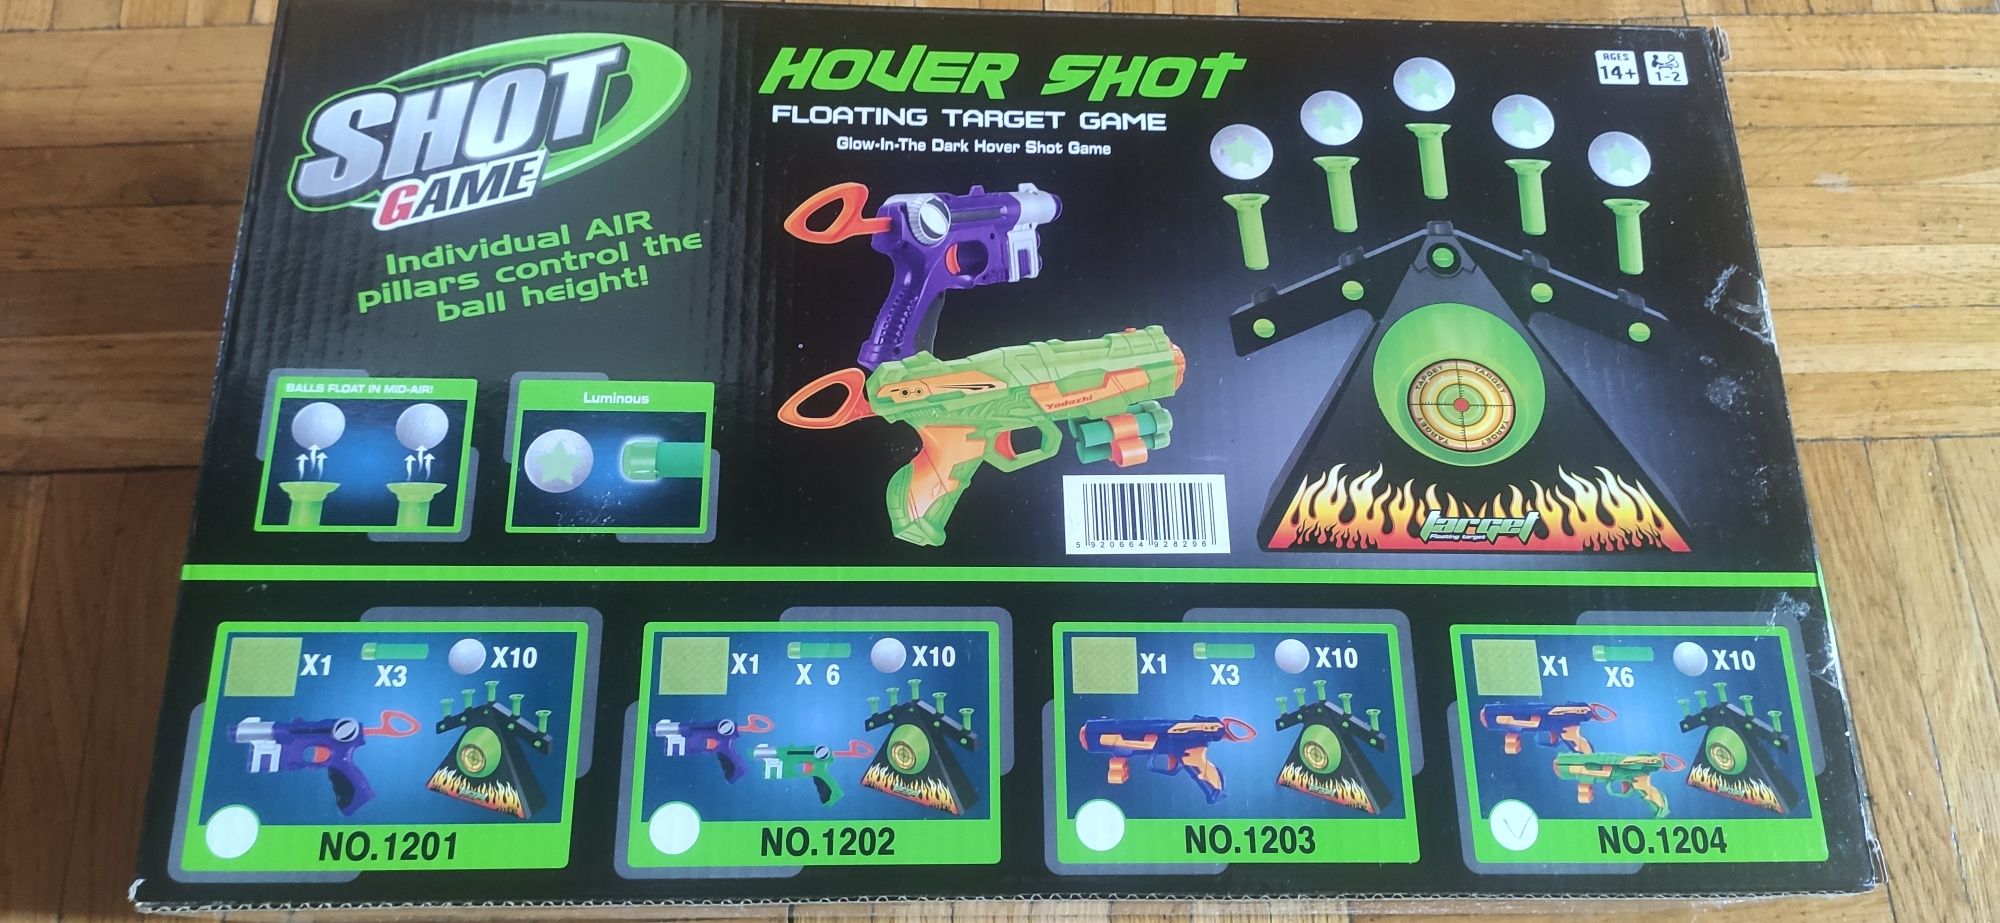 GRA HOVER SHOT 2.0 strzelanie do latających piłeczek 2 pistolety